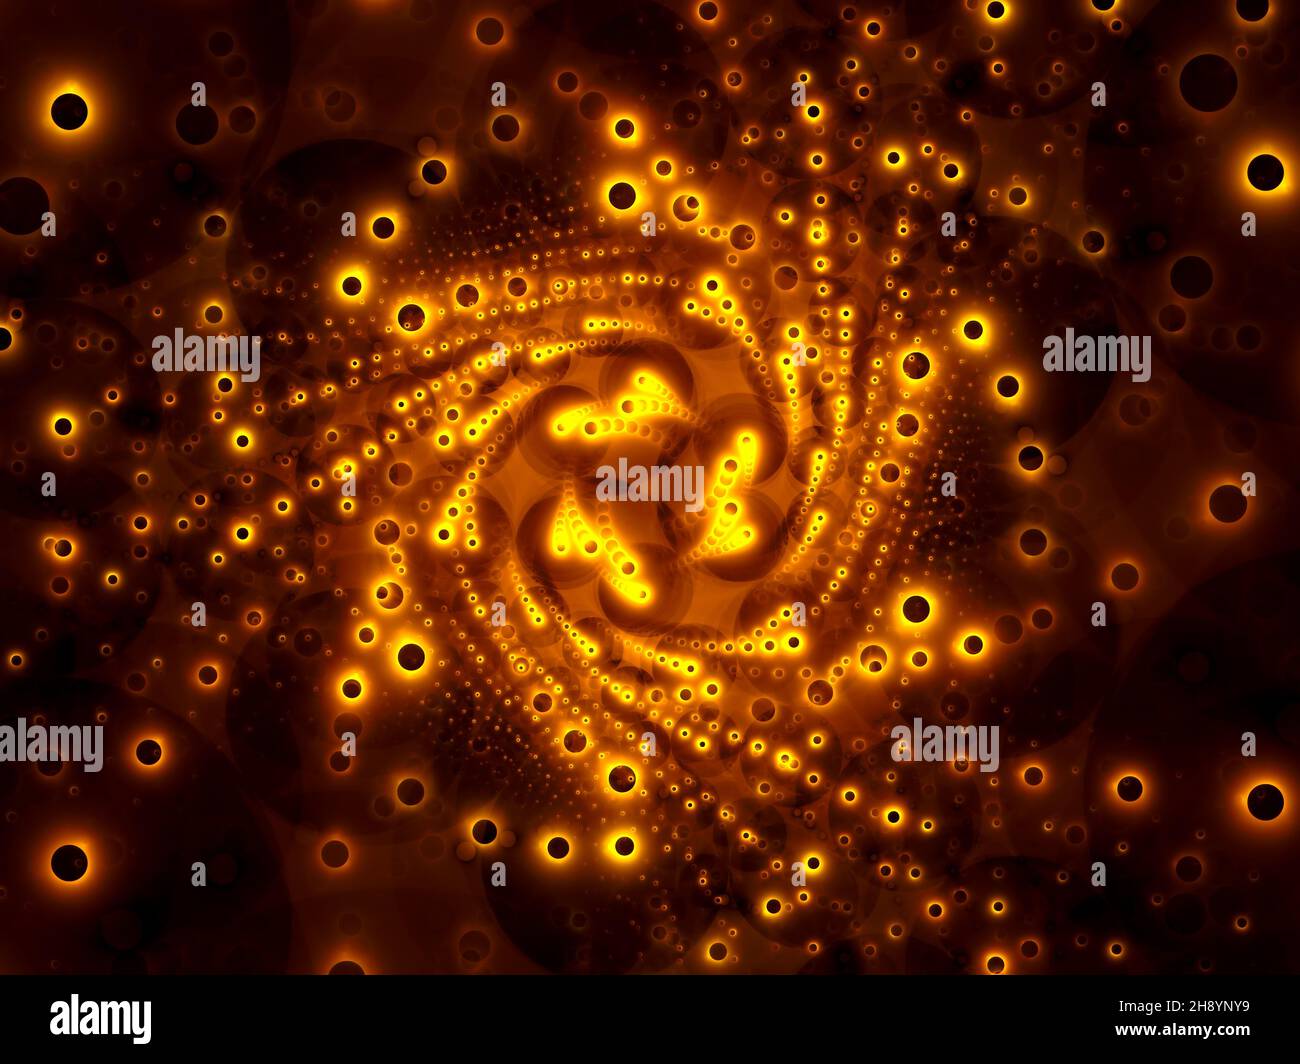 Spirale fractale dorée - illustration abstraite générée par ordinateur Banque D'Images